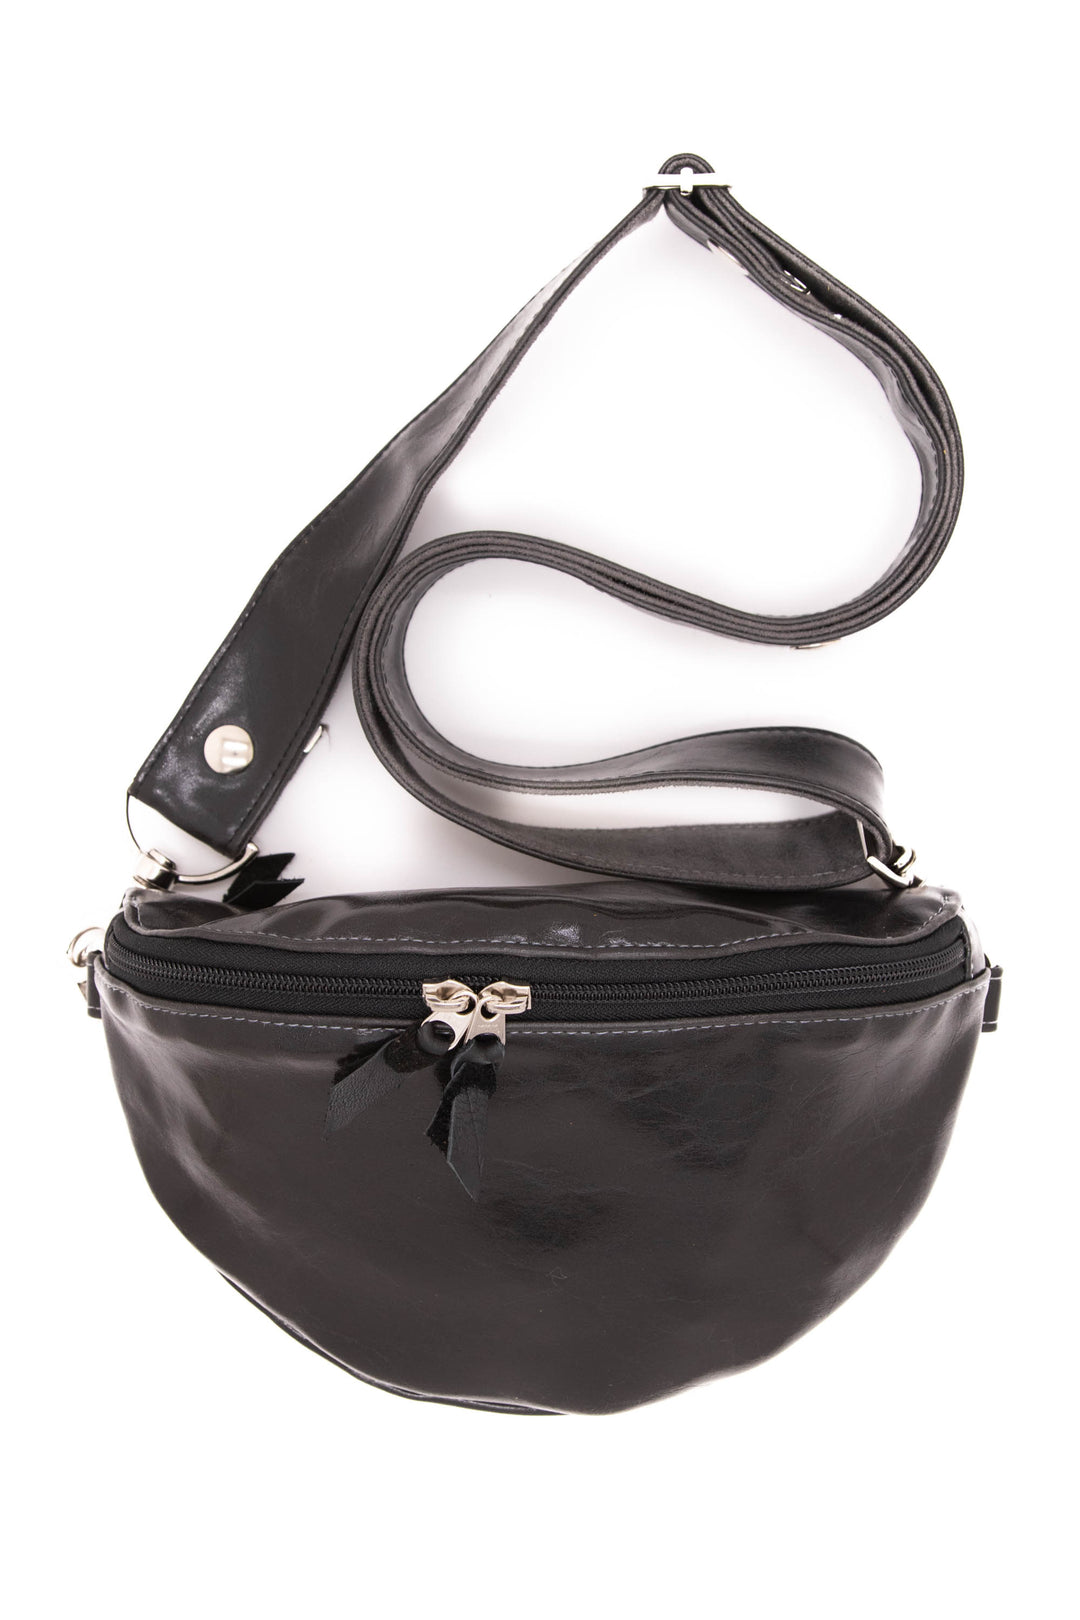 OSLEI Leather Chain Belt Bag for Women Crossbody Waist Purse Fanny